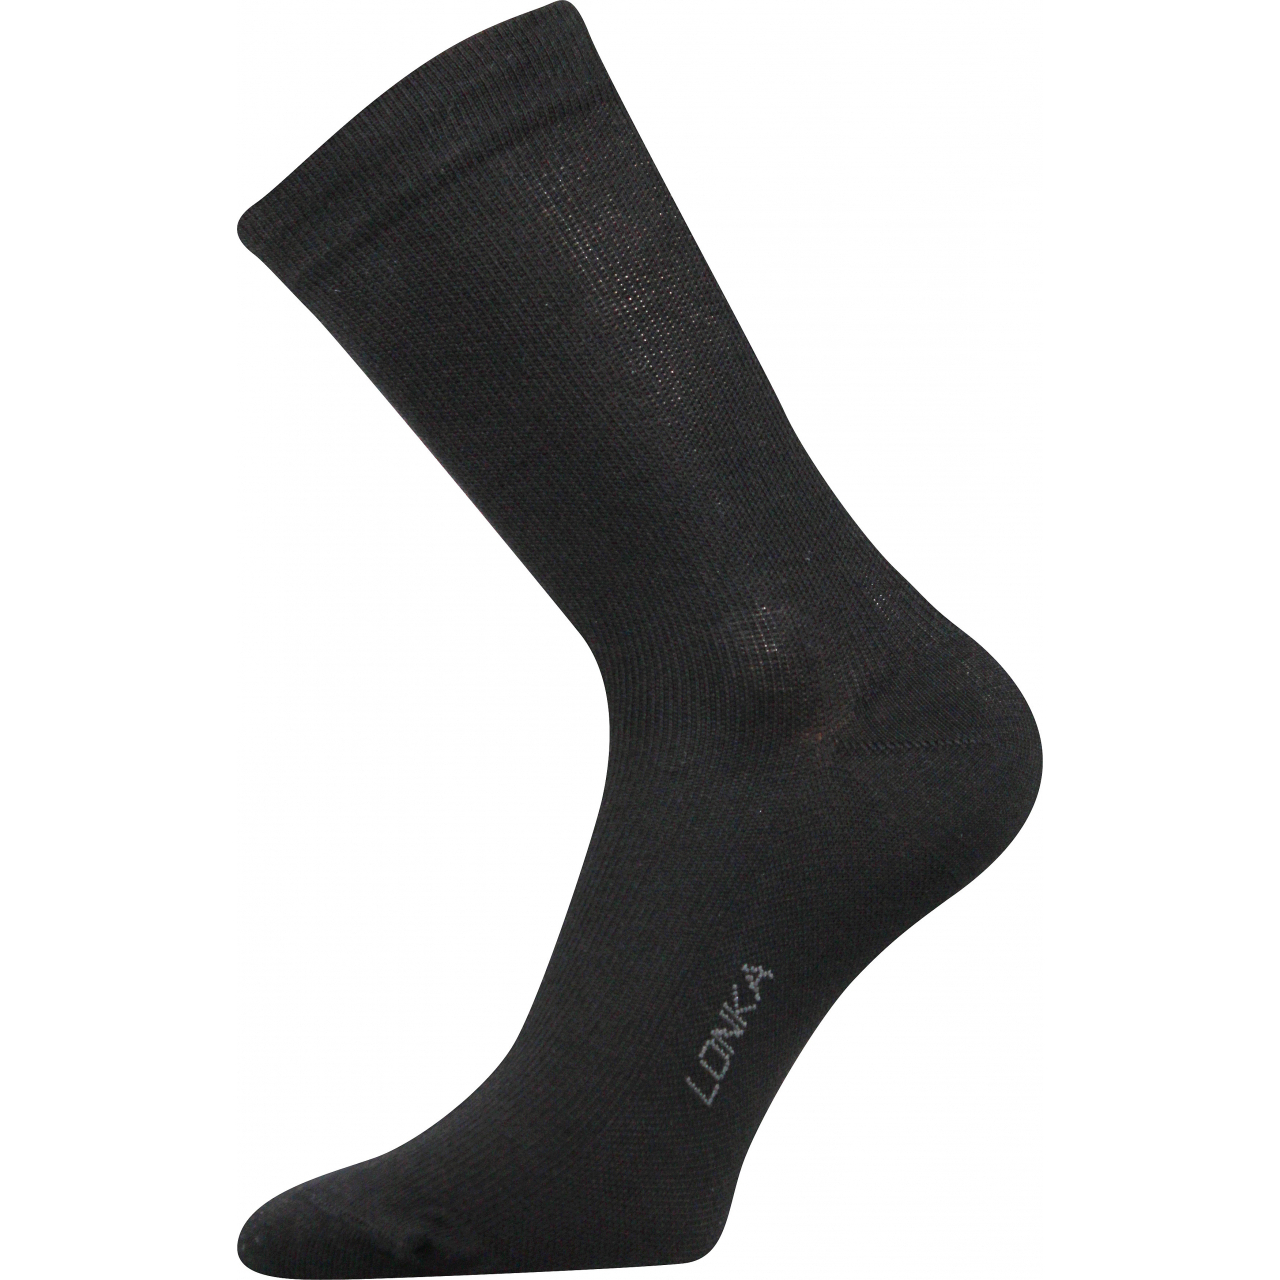 Ponožky kompresní Lonka Kooper - černé, 43-46